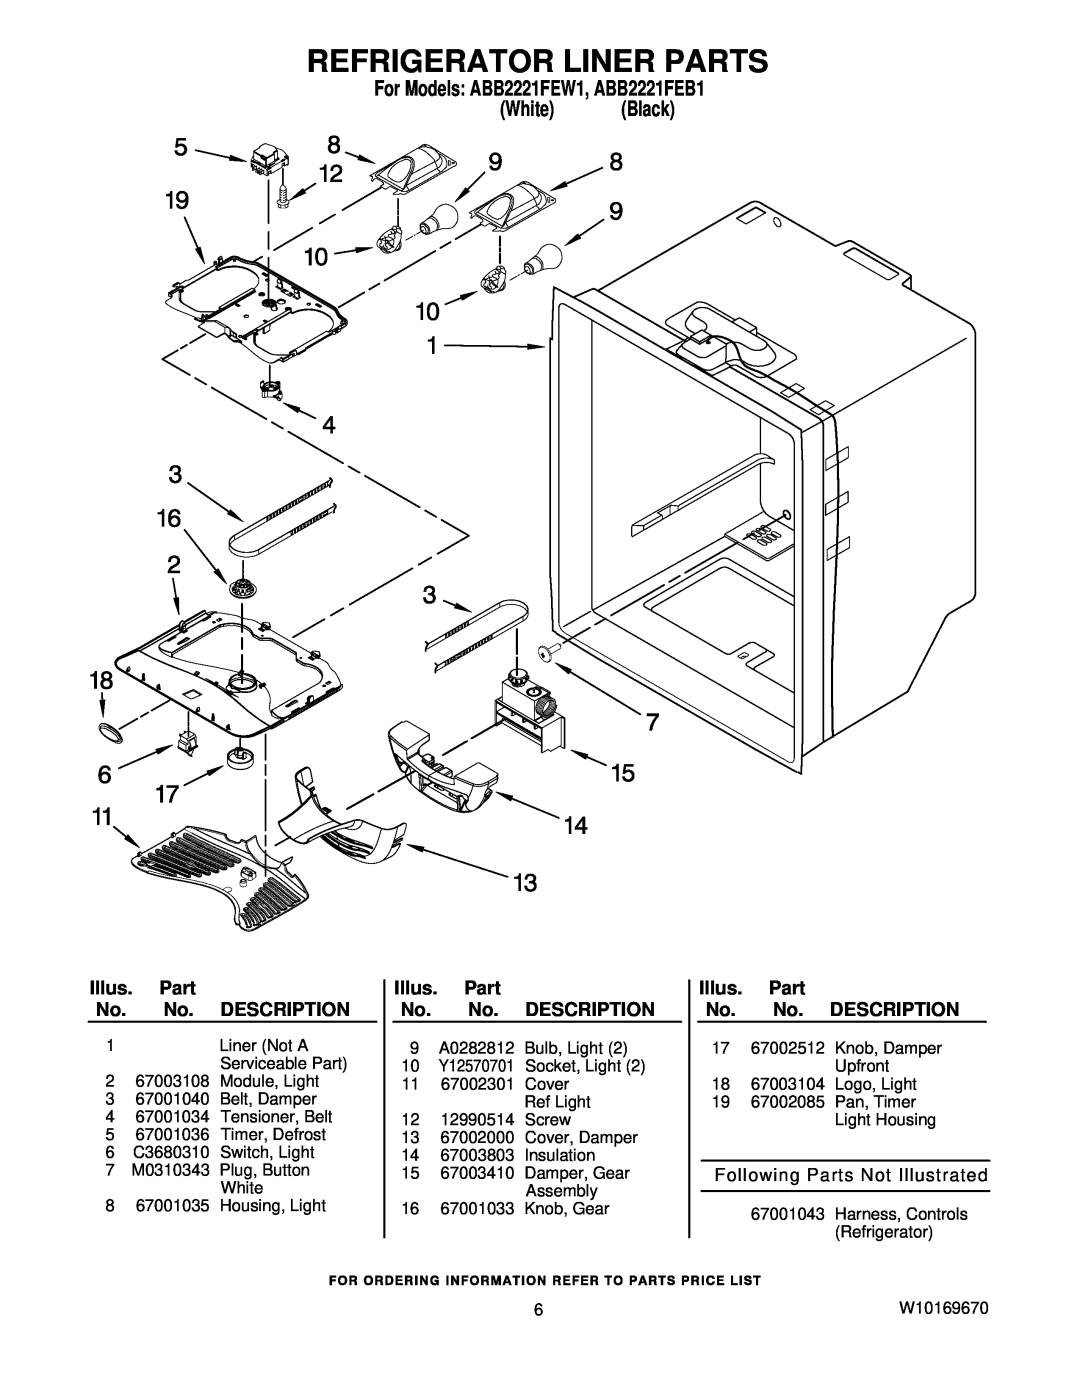 Amana manual Refrigerator Liner Parts, For Models ABB2221FEW1, ABB2221FEB1 White Black, Illus. Part No. No. DESCRIPTION 